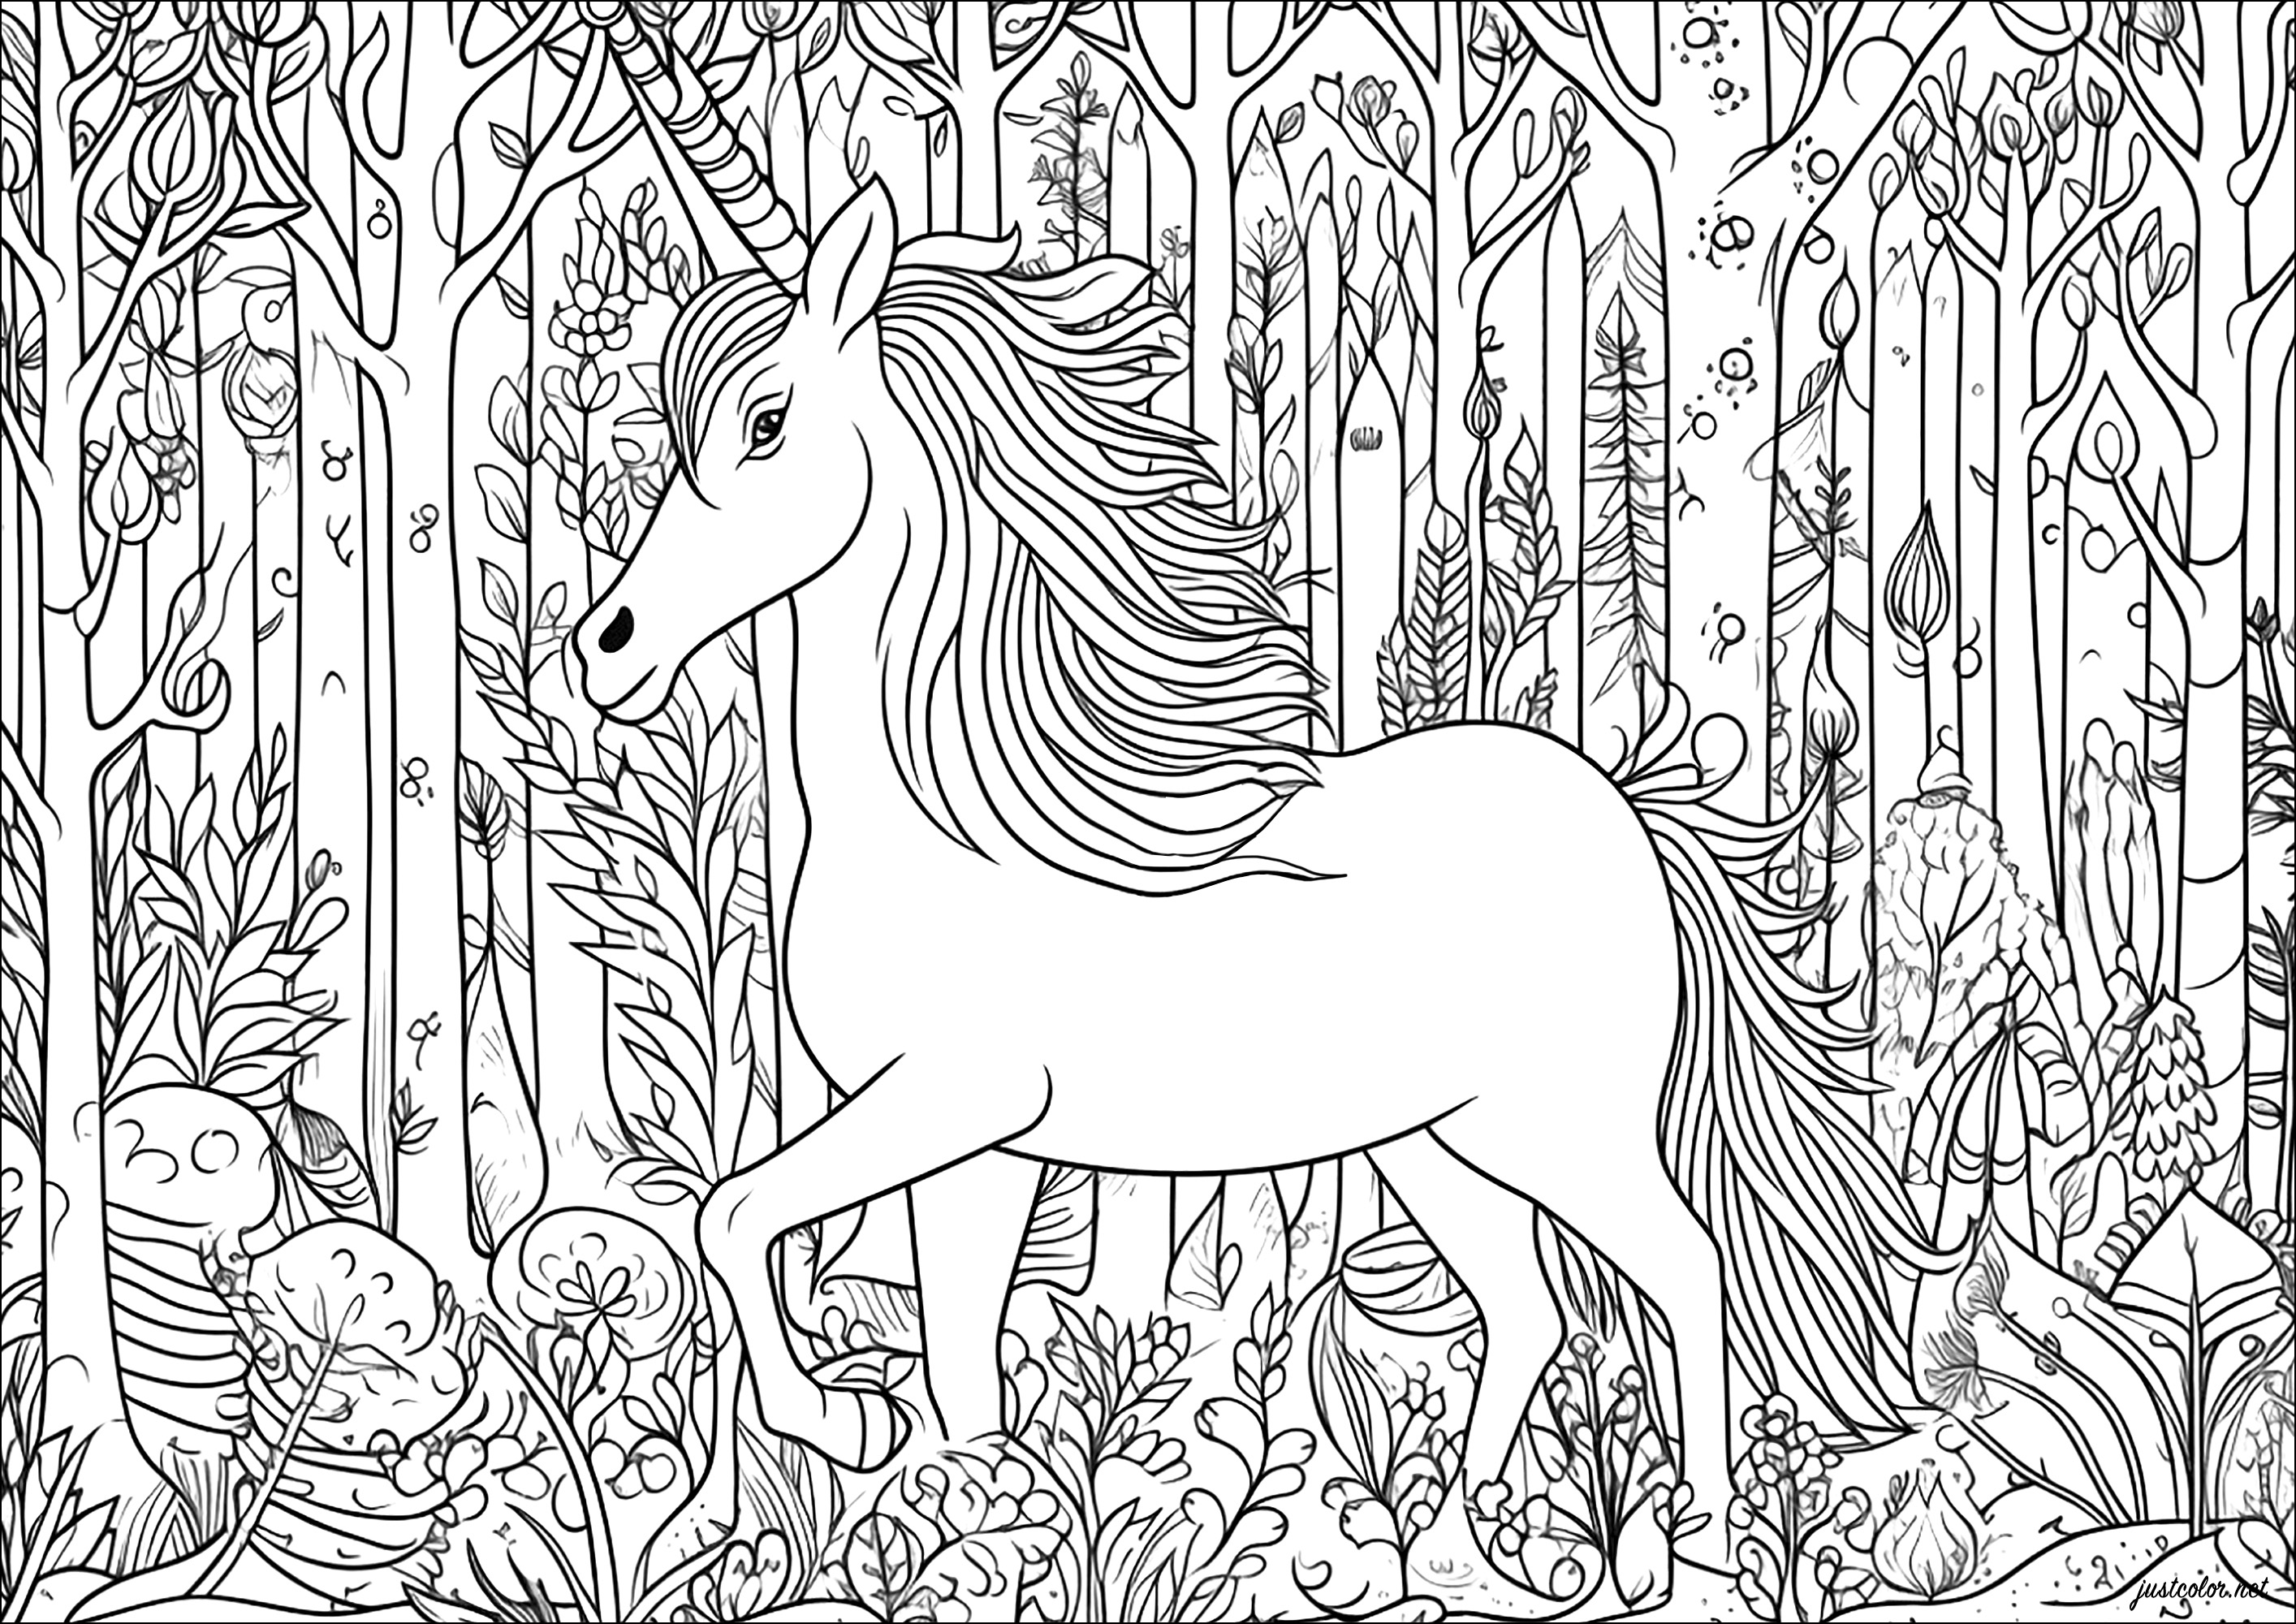 Licorne majestueuse, avançant dans une forêt